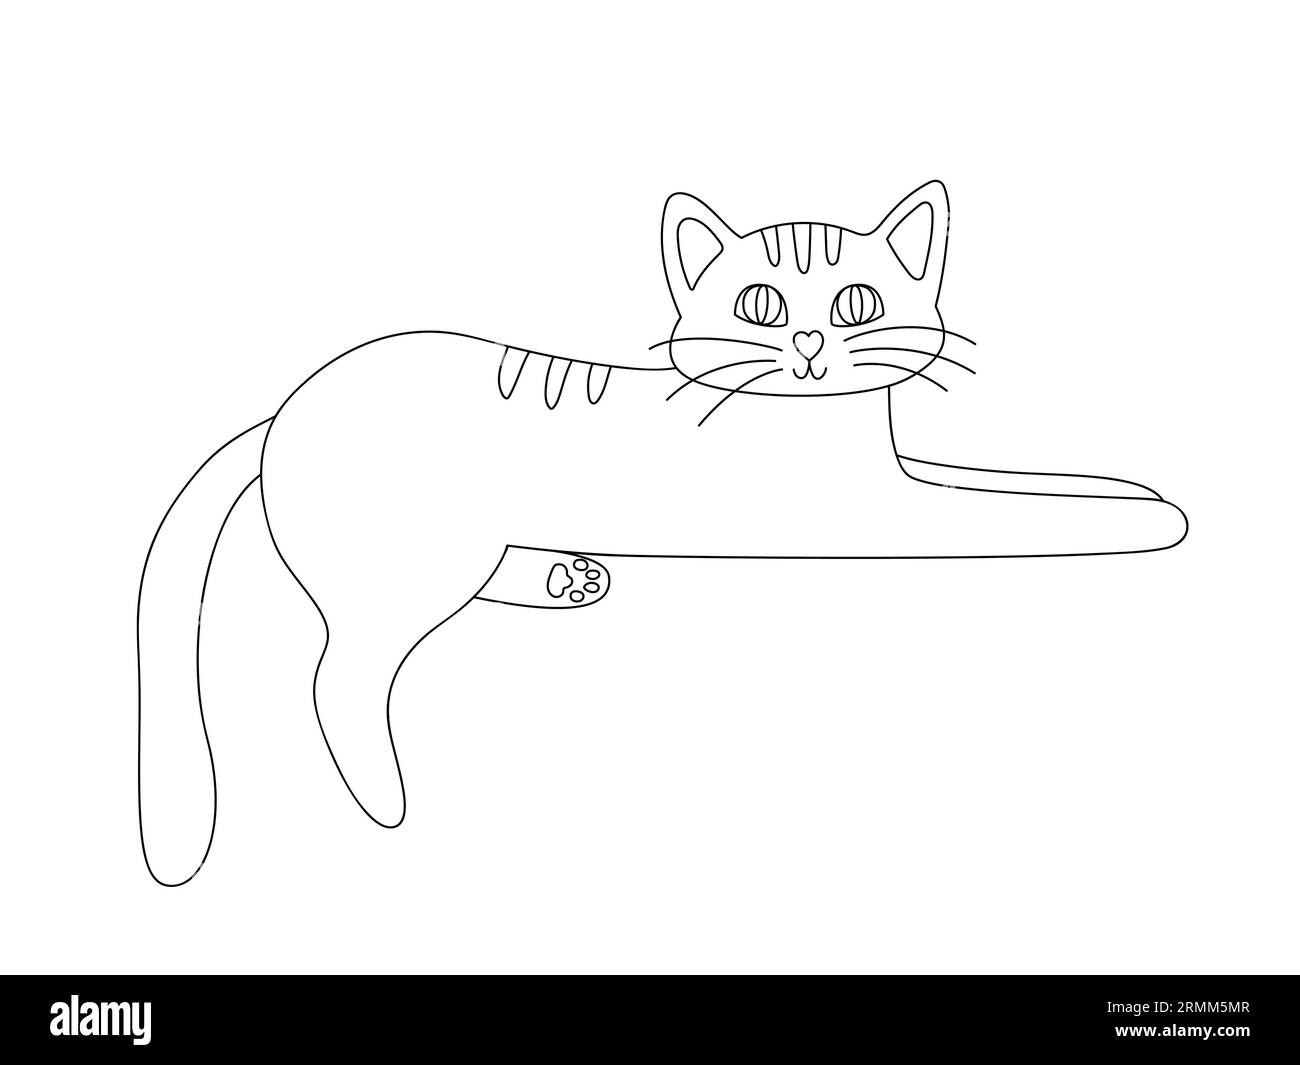 Gatto sdraiato disegnato a mano con gli occhi chiusi. Animali domestici in stile doodle. Illustrazione vettoriale in bianco e nero isolata su sfondo bianco Illustrazione Vettoriale